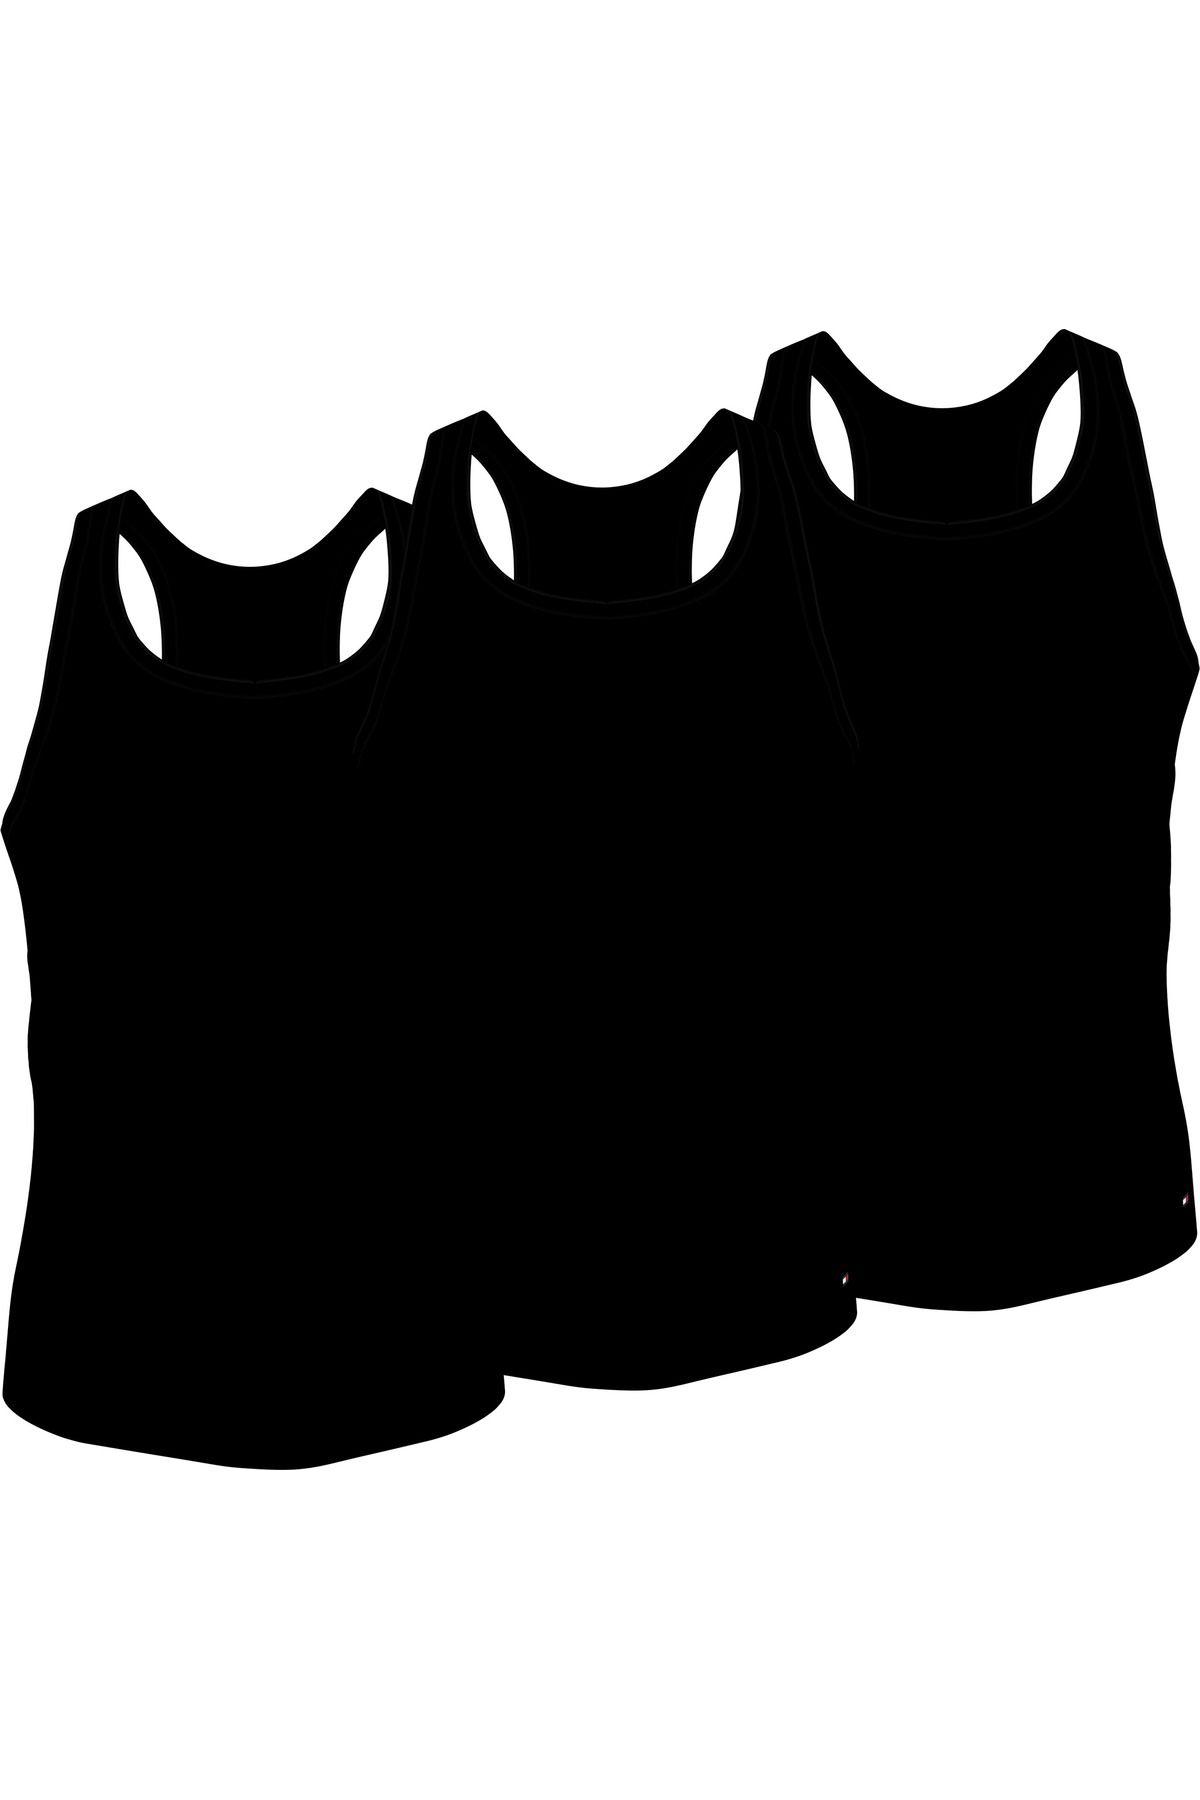 Tommy Hilfiger Erkek Marka Logolu Pamuklu Günlük Kullanıma Uygun Siyah Atlet Um0um03179-05n